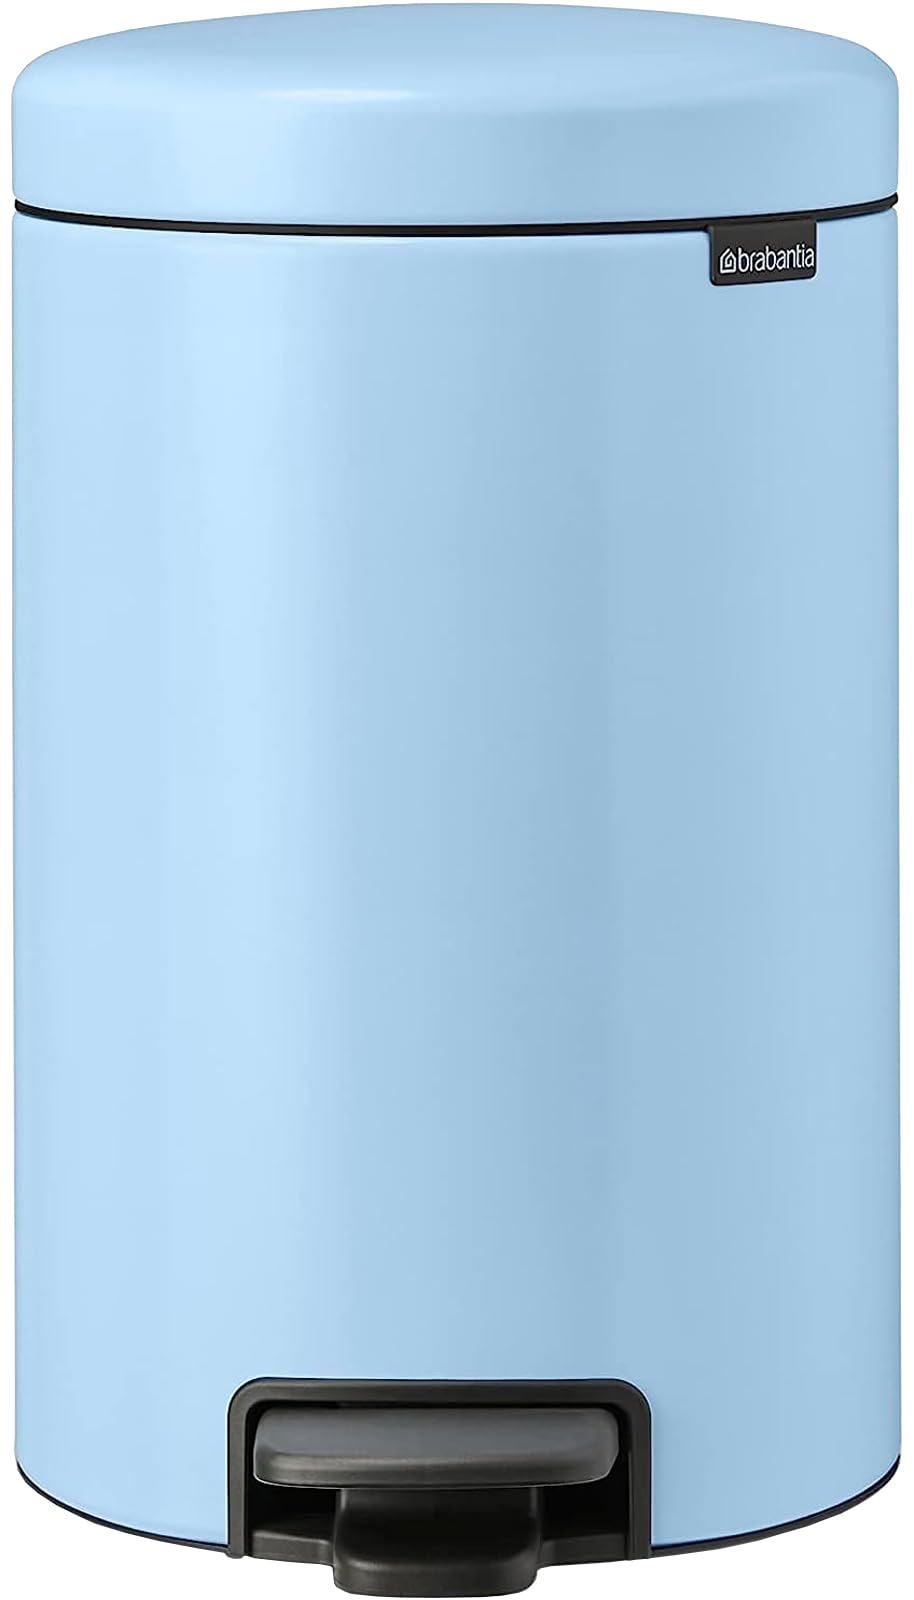 ブラバンシア(Brabantia) ペダル式ゴミ箱 ペダルビン ニューアイコン 12L ドリーミーブルー 静かに軽やかに閉まる機能搭載 202483